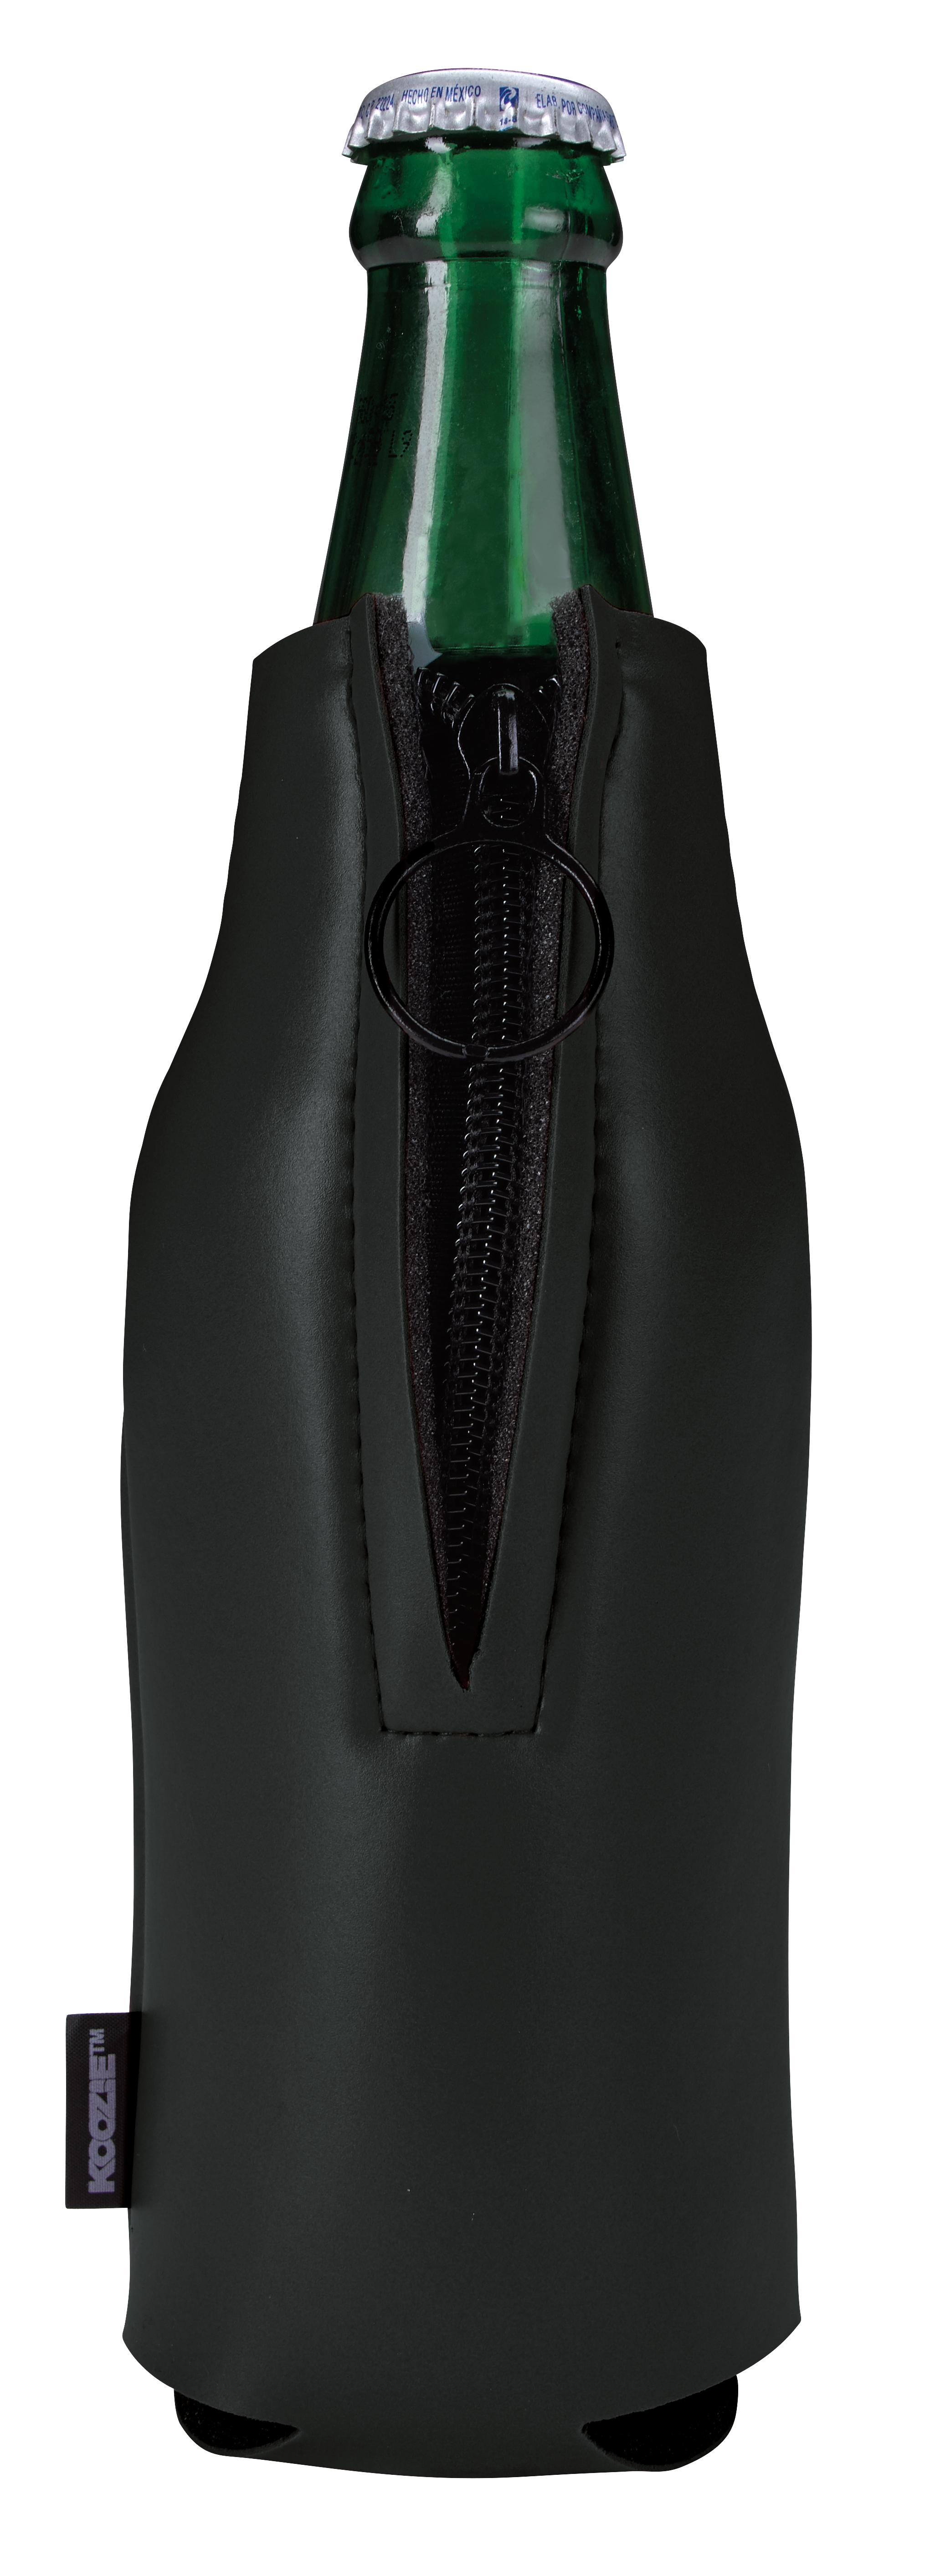 Koozie 46280 - Deluxe Zip-Up Bottle Kooler